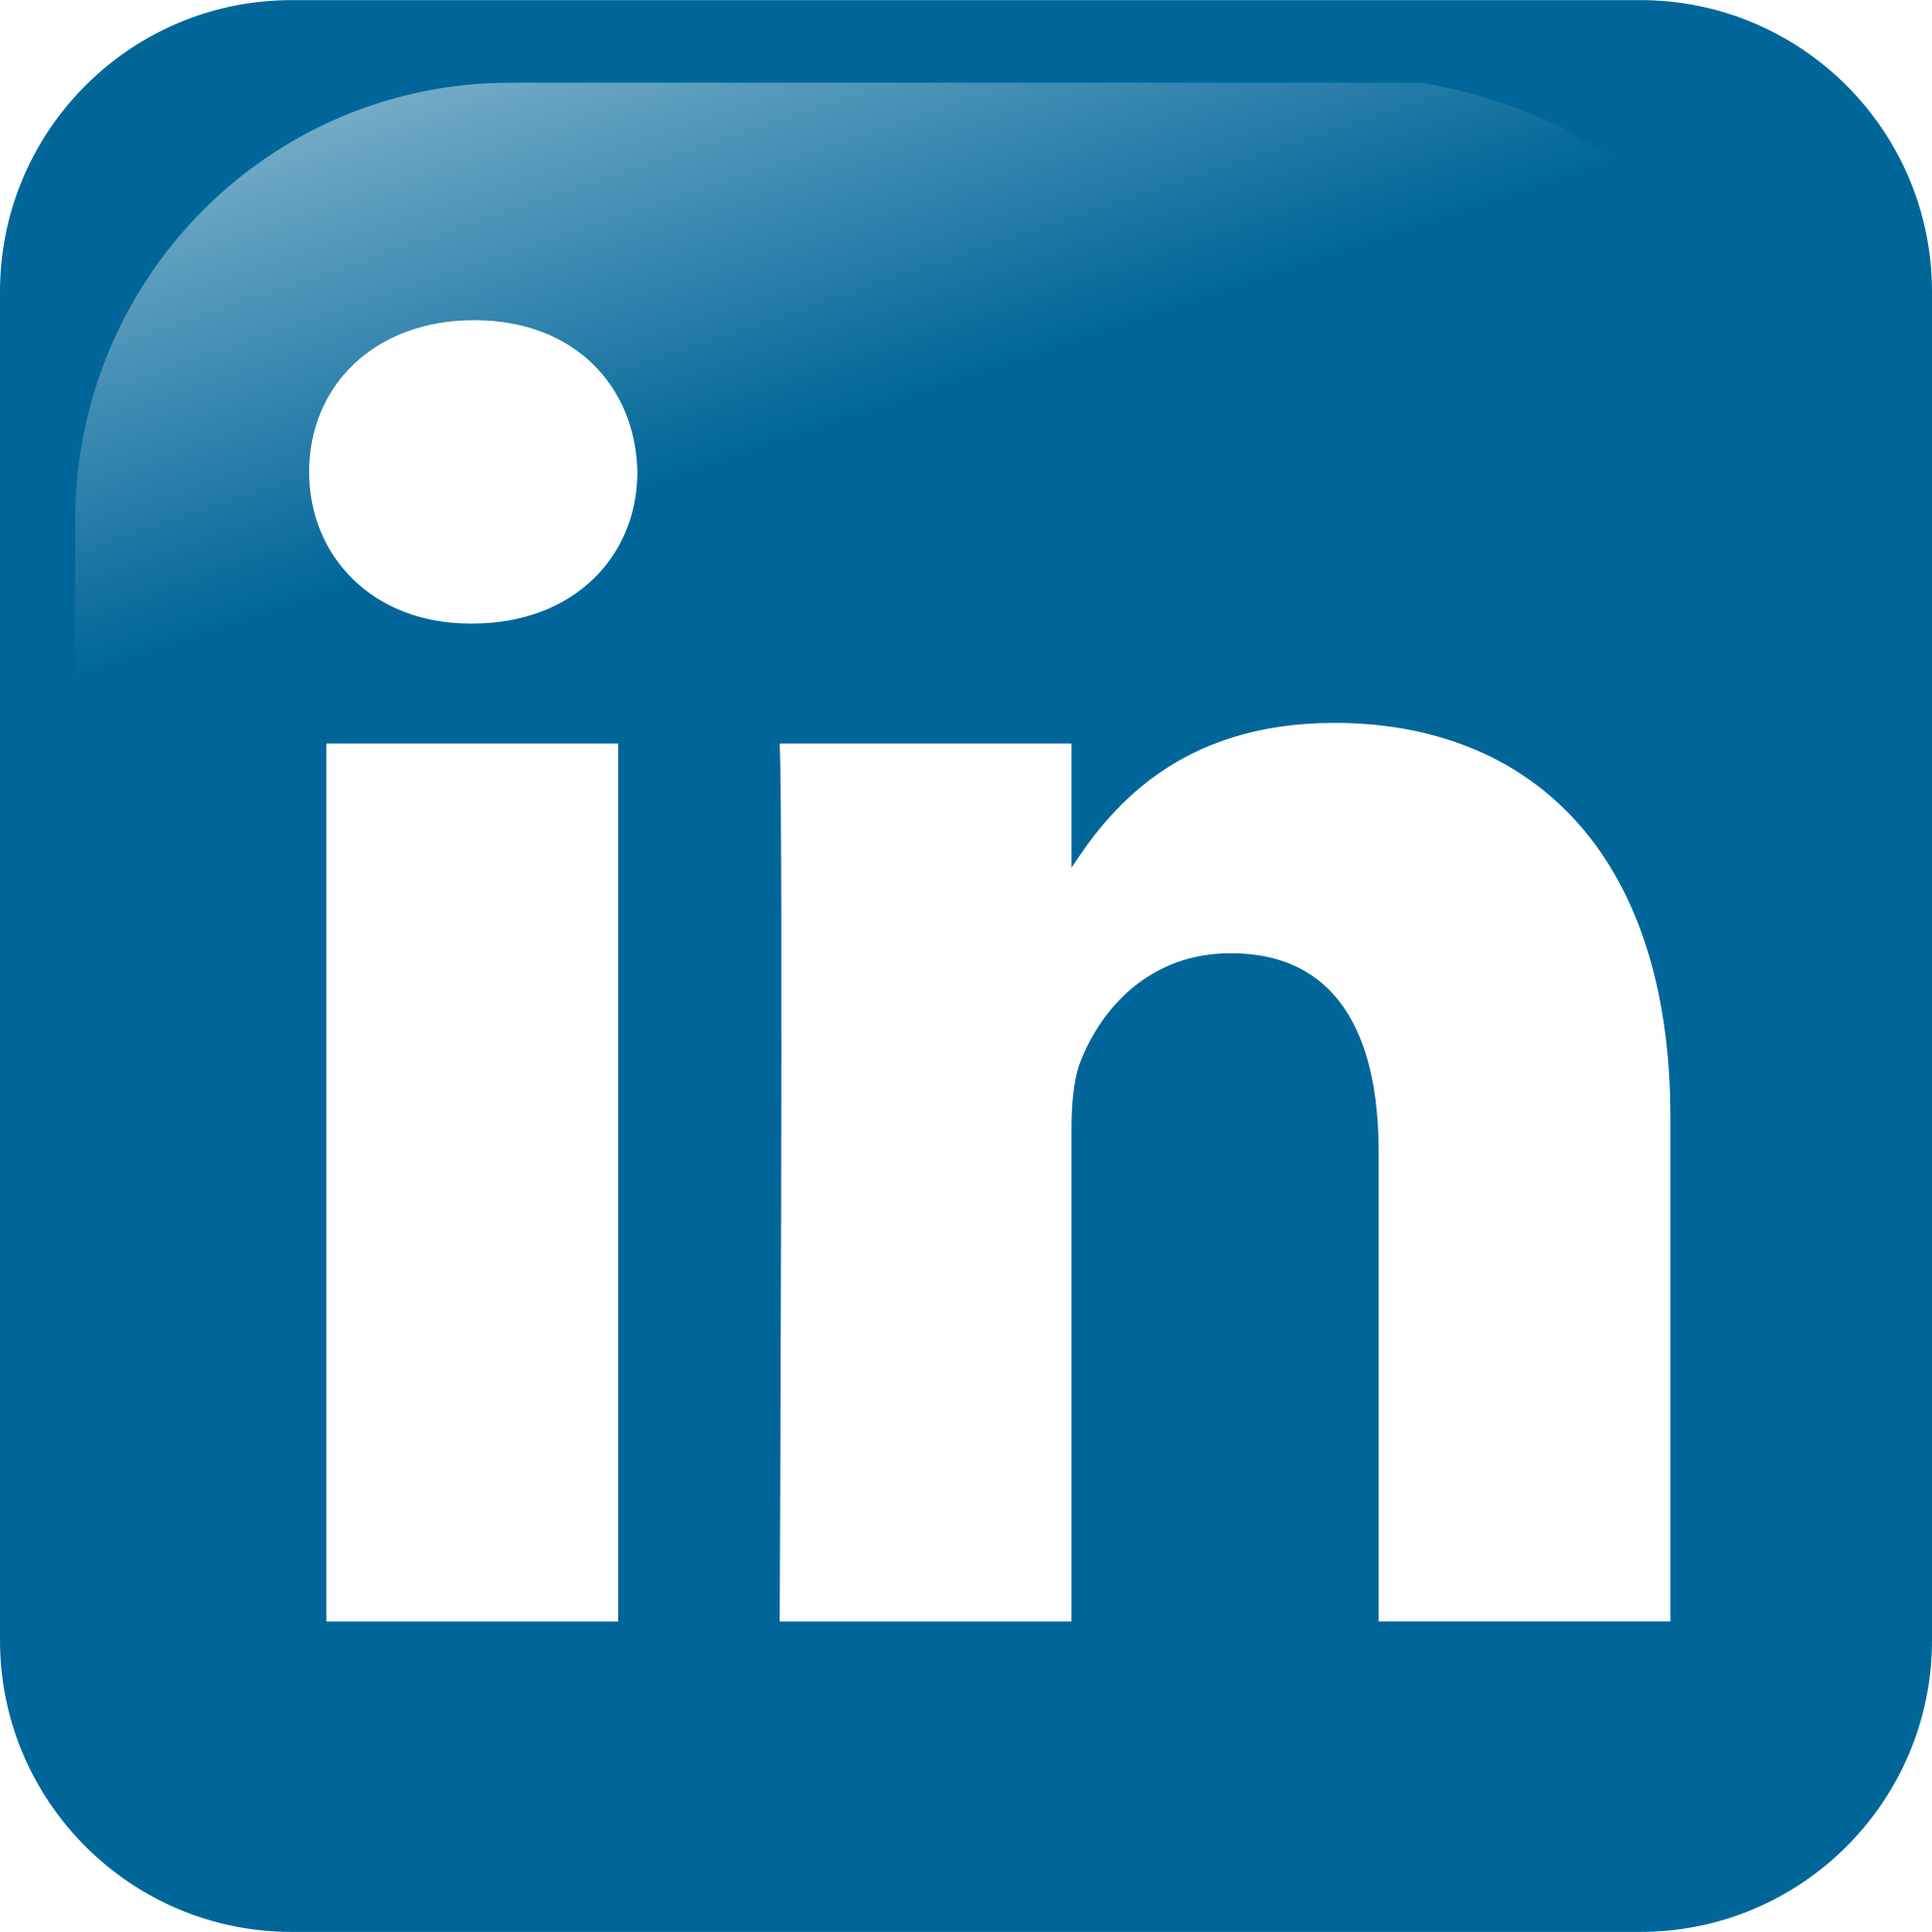 Afbeeldingsresultaat voor linkedin logo